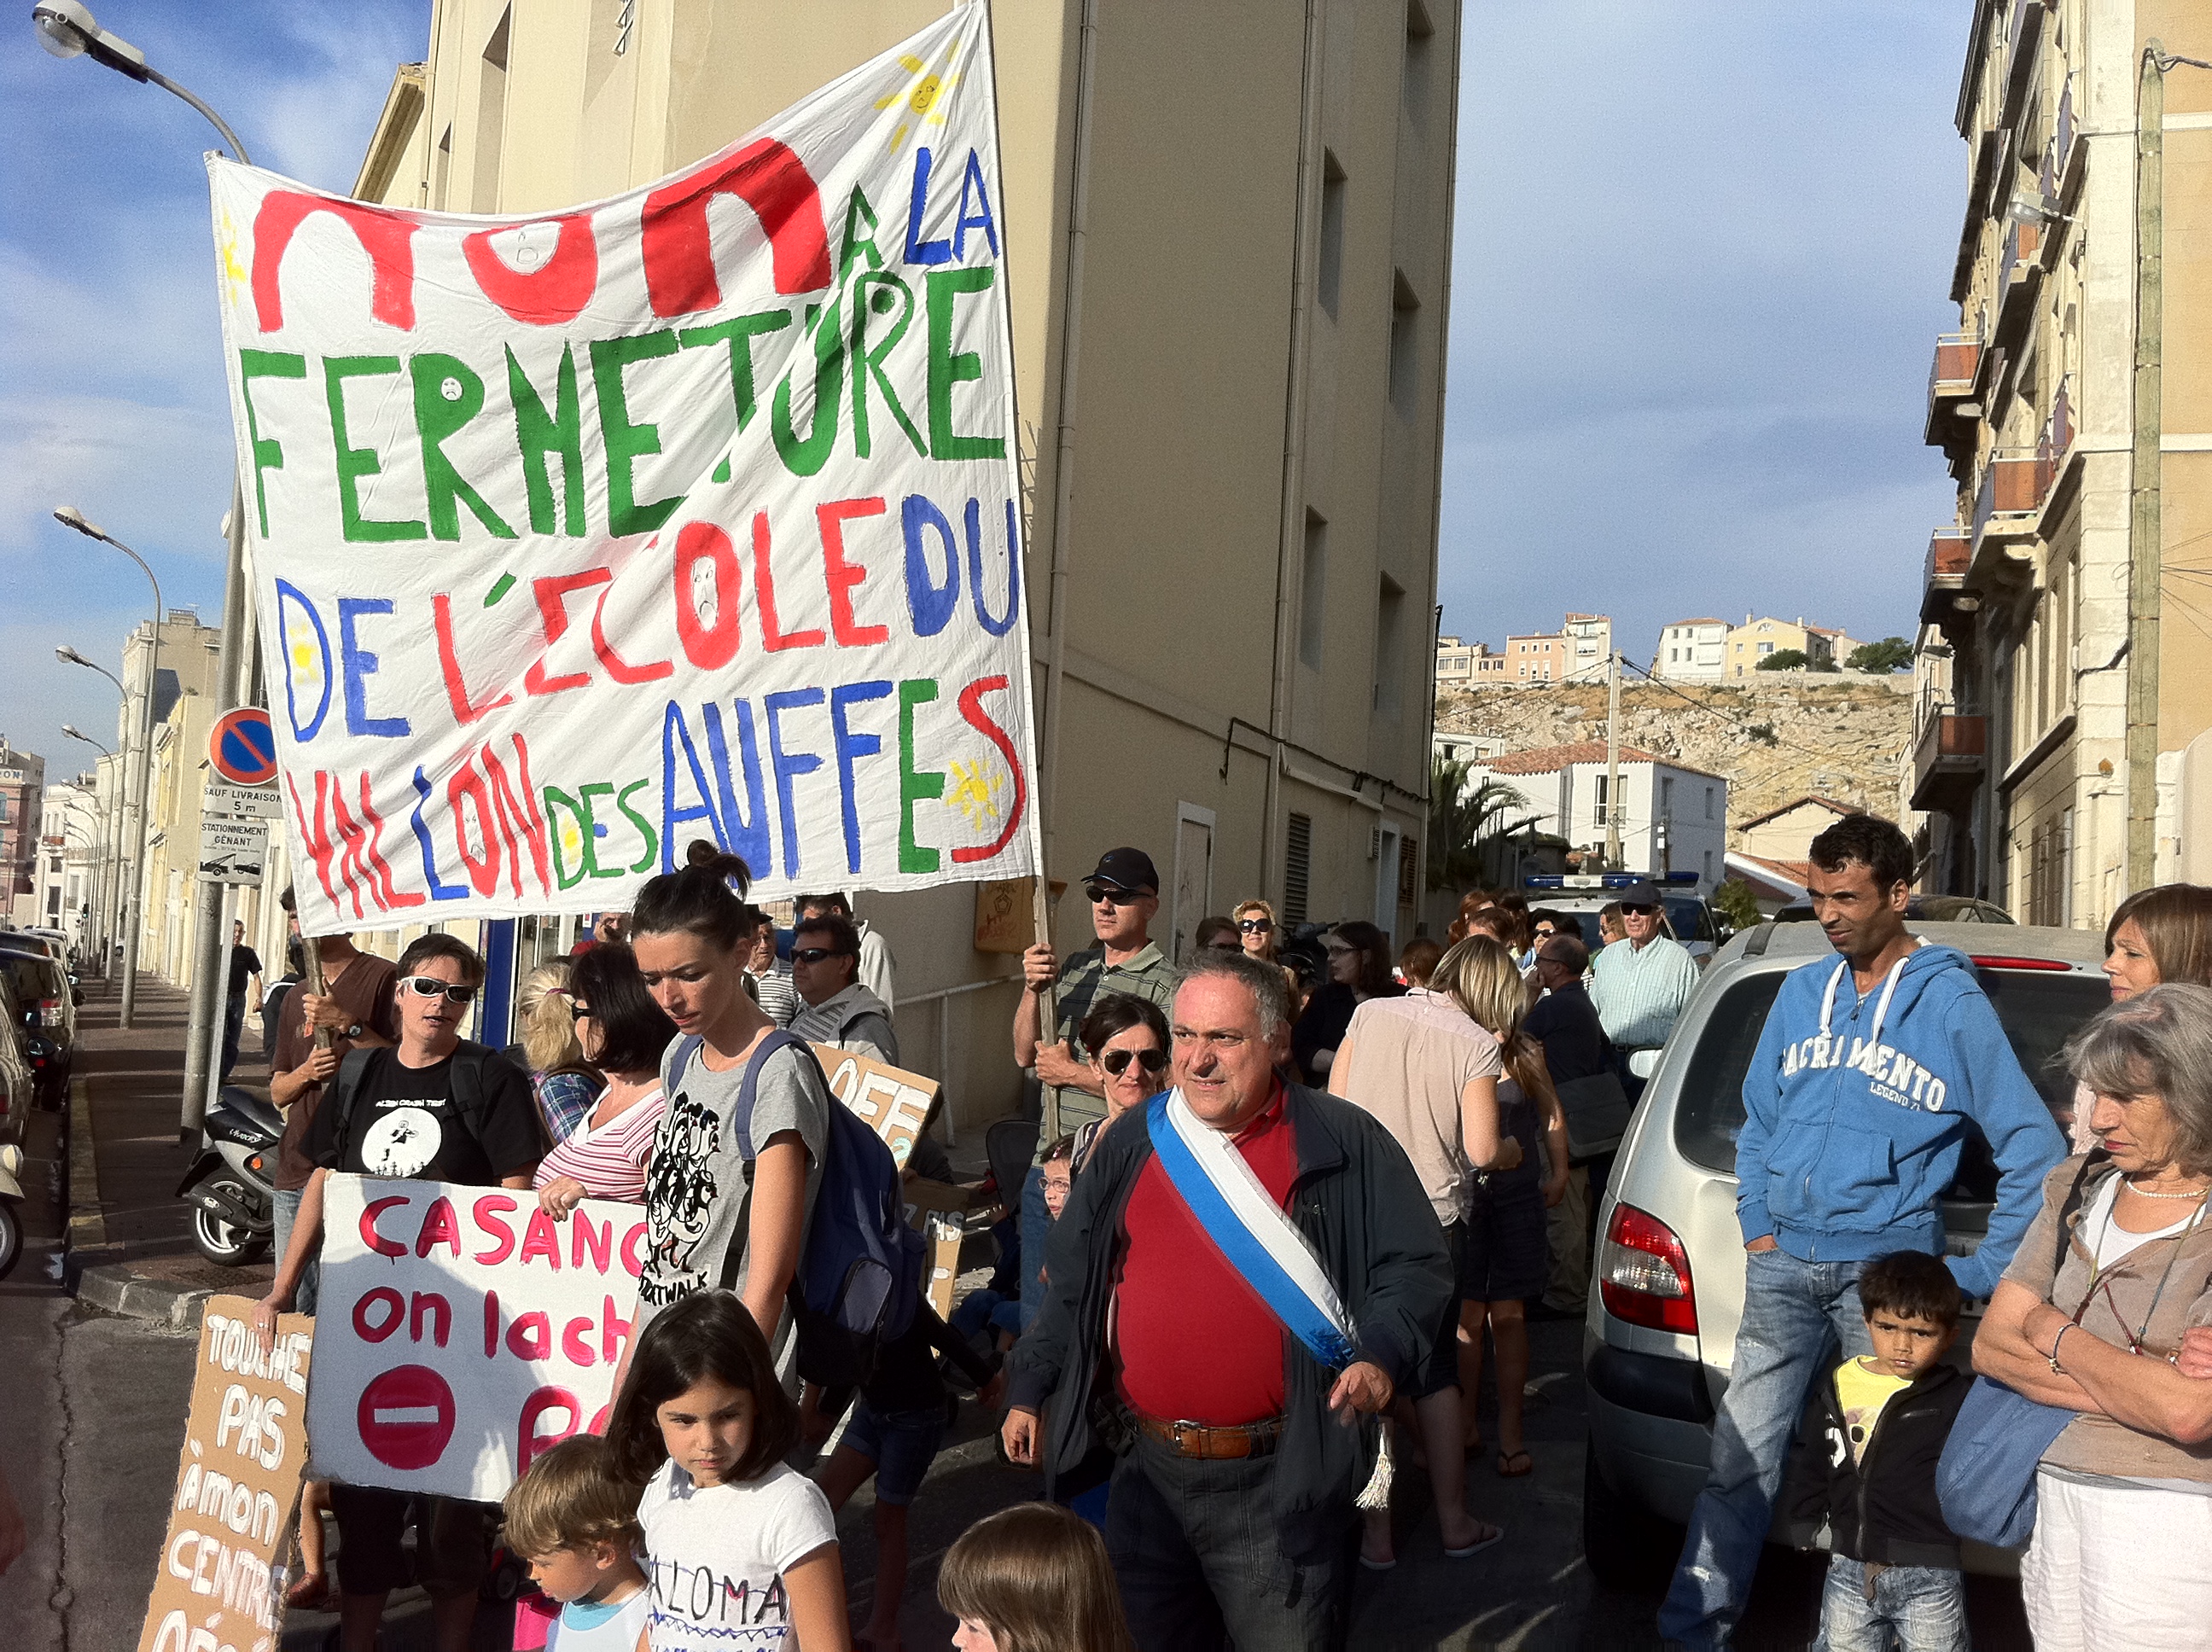 Mercredi 29 juin : Les parents d’élèves du Vallon des Auffes ont assigné la Ville de Marseille au Tribunal !